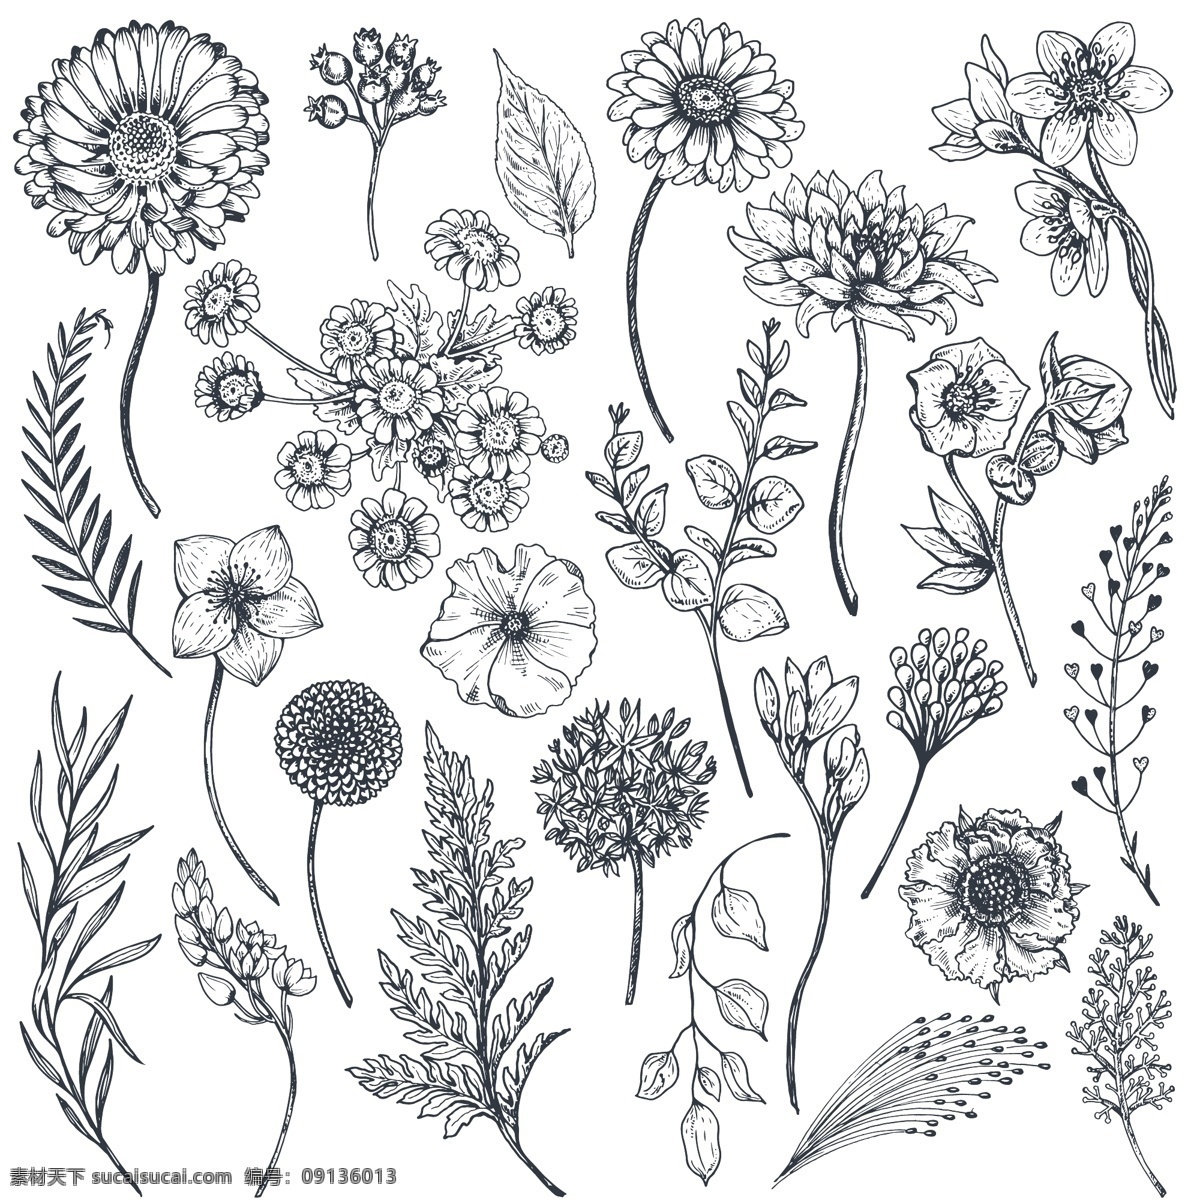 黑白 手绘 植物 叶子 插画 花朵 清新 速写